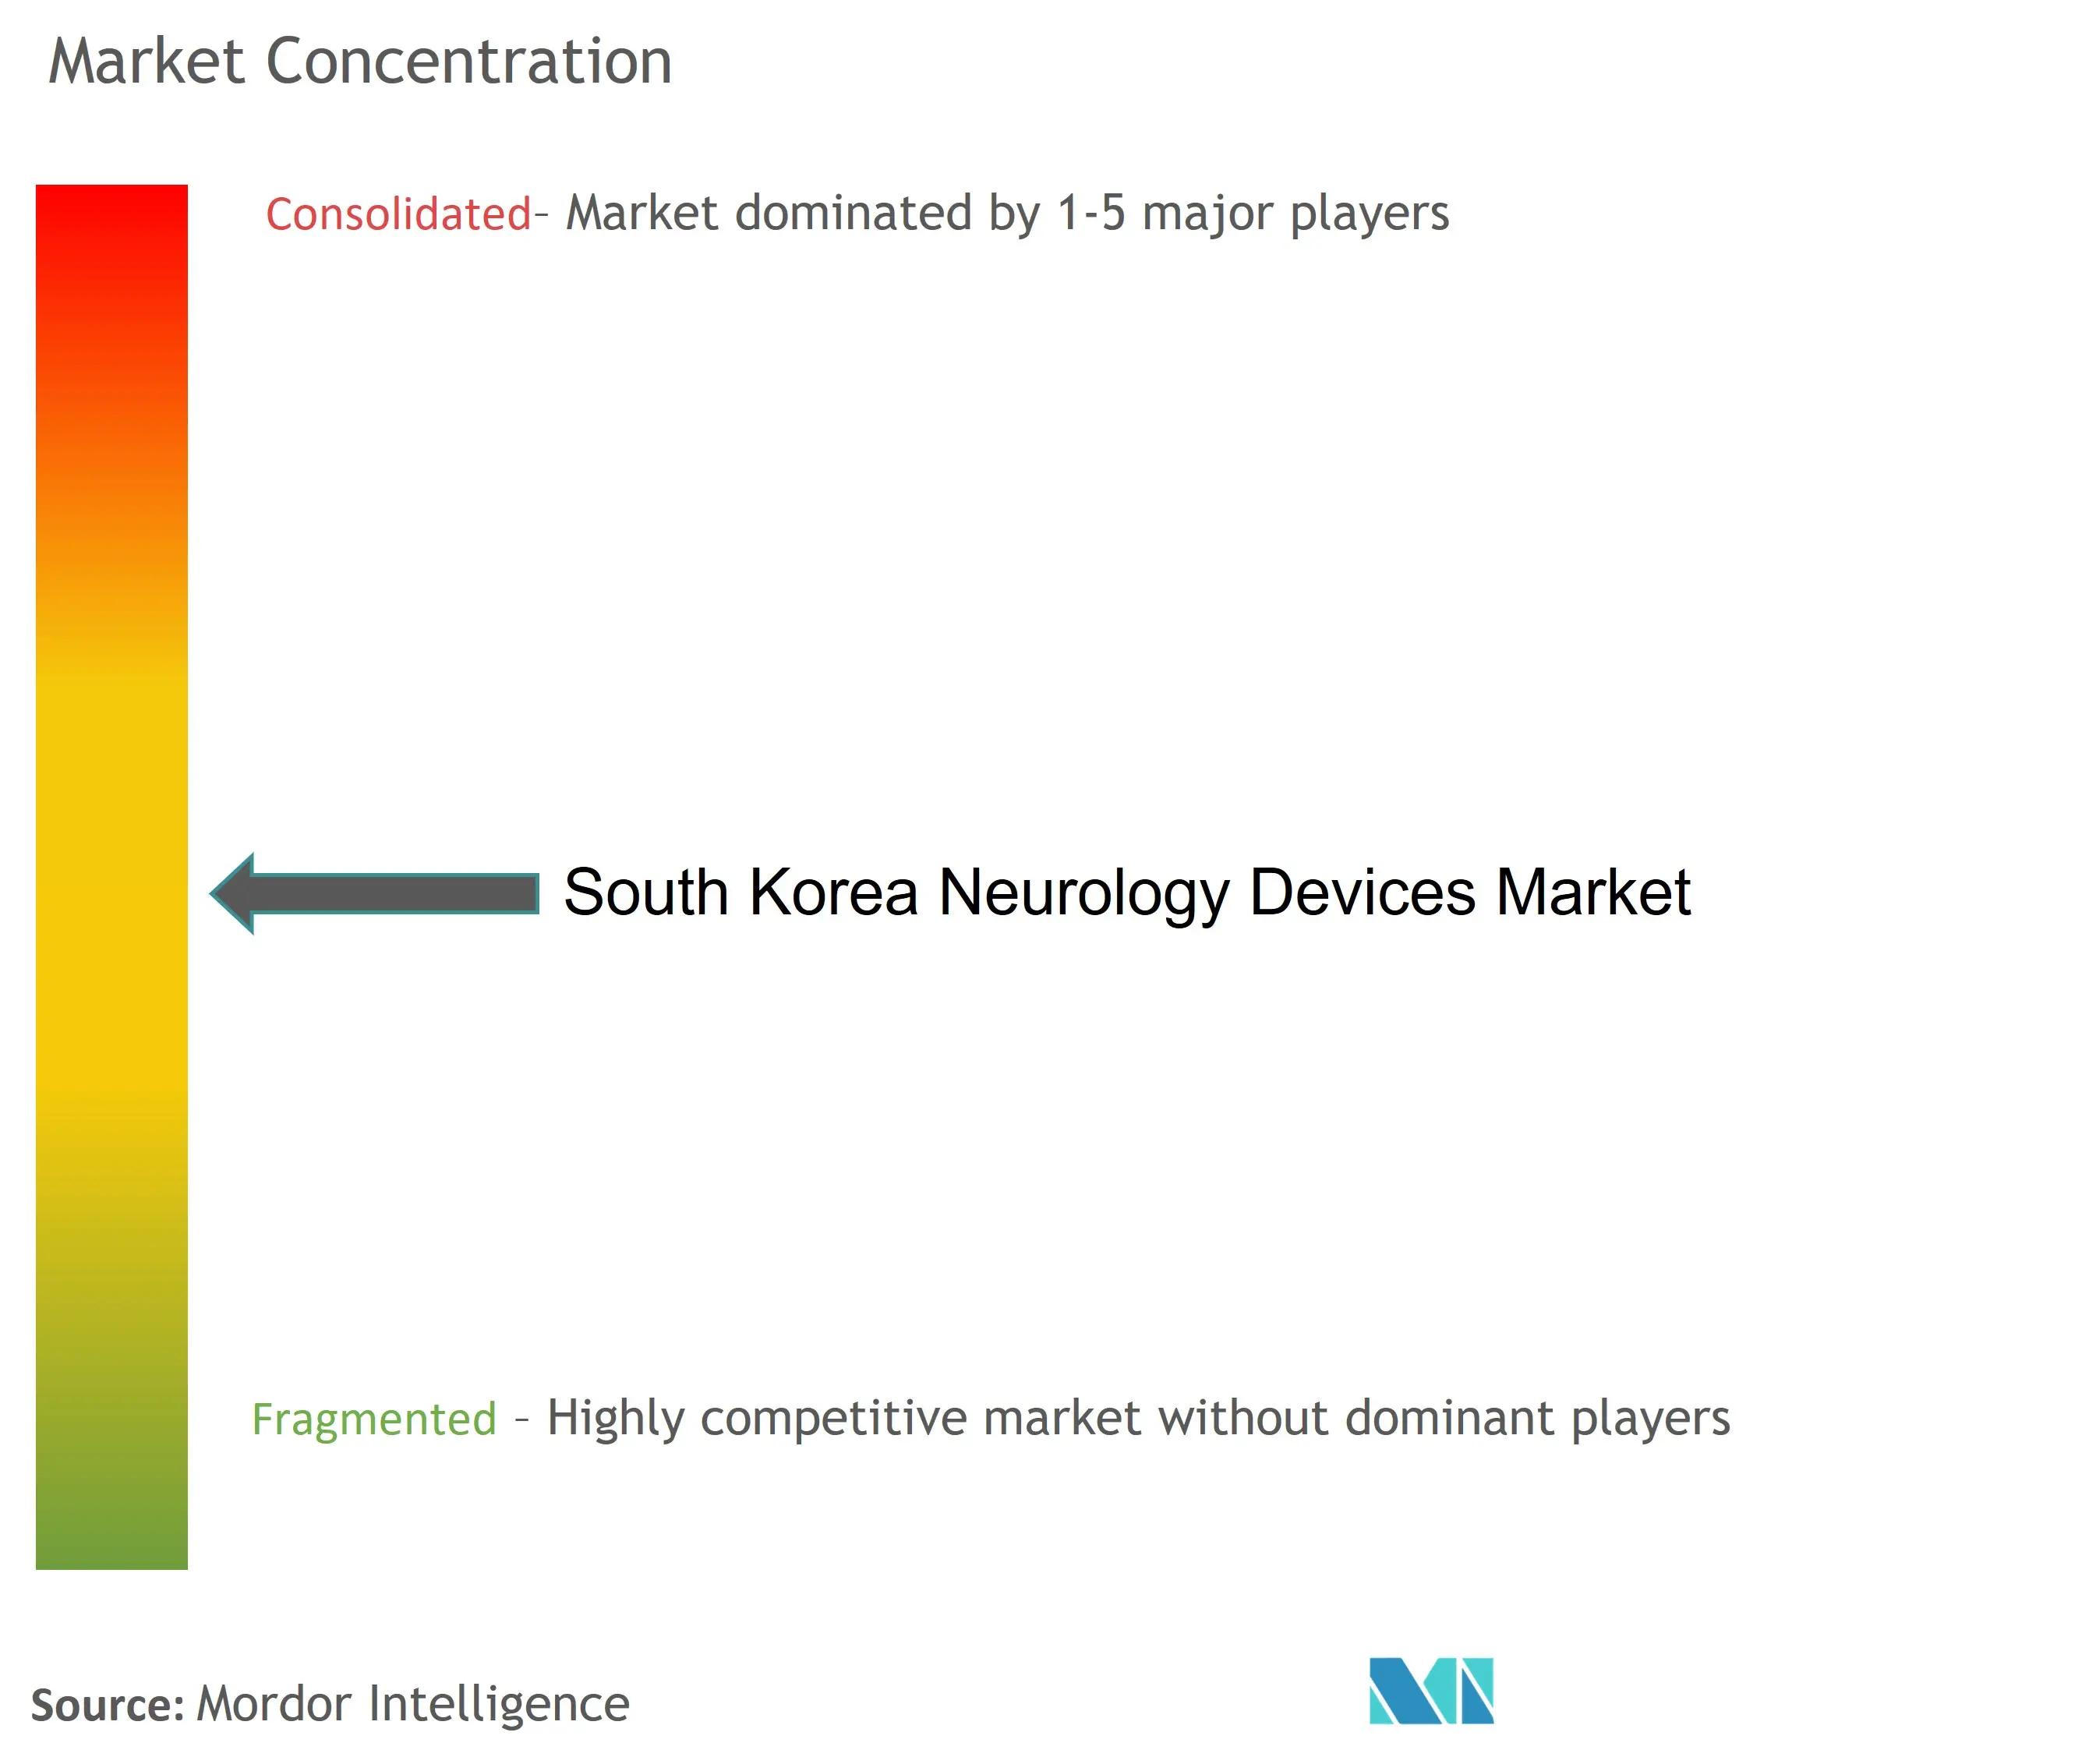 تركيز سوق أجهزة الأعصاب في كوريا الجنوبية